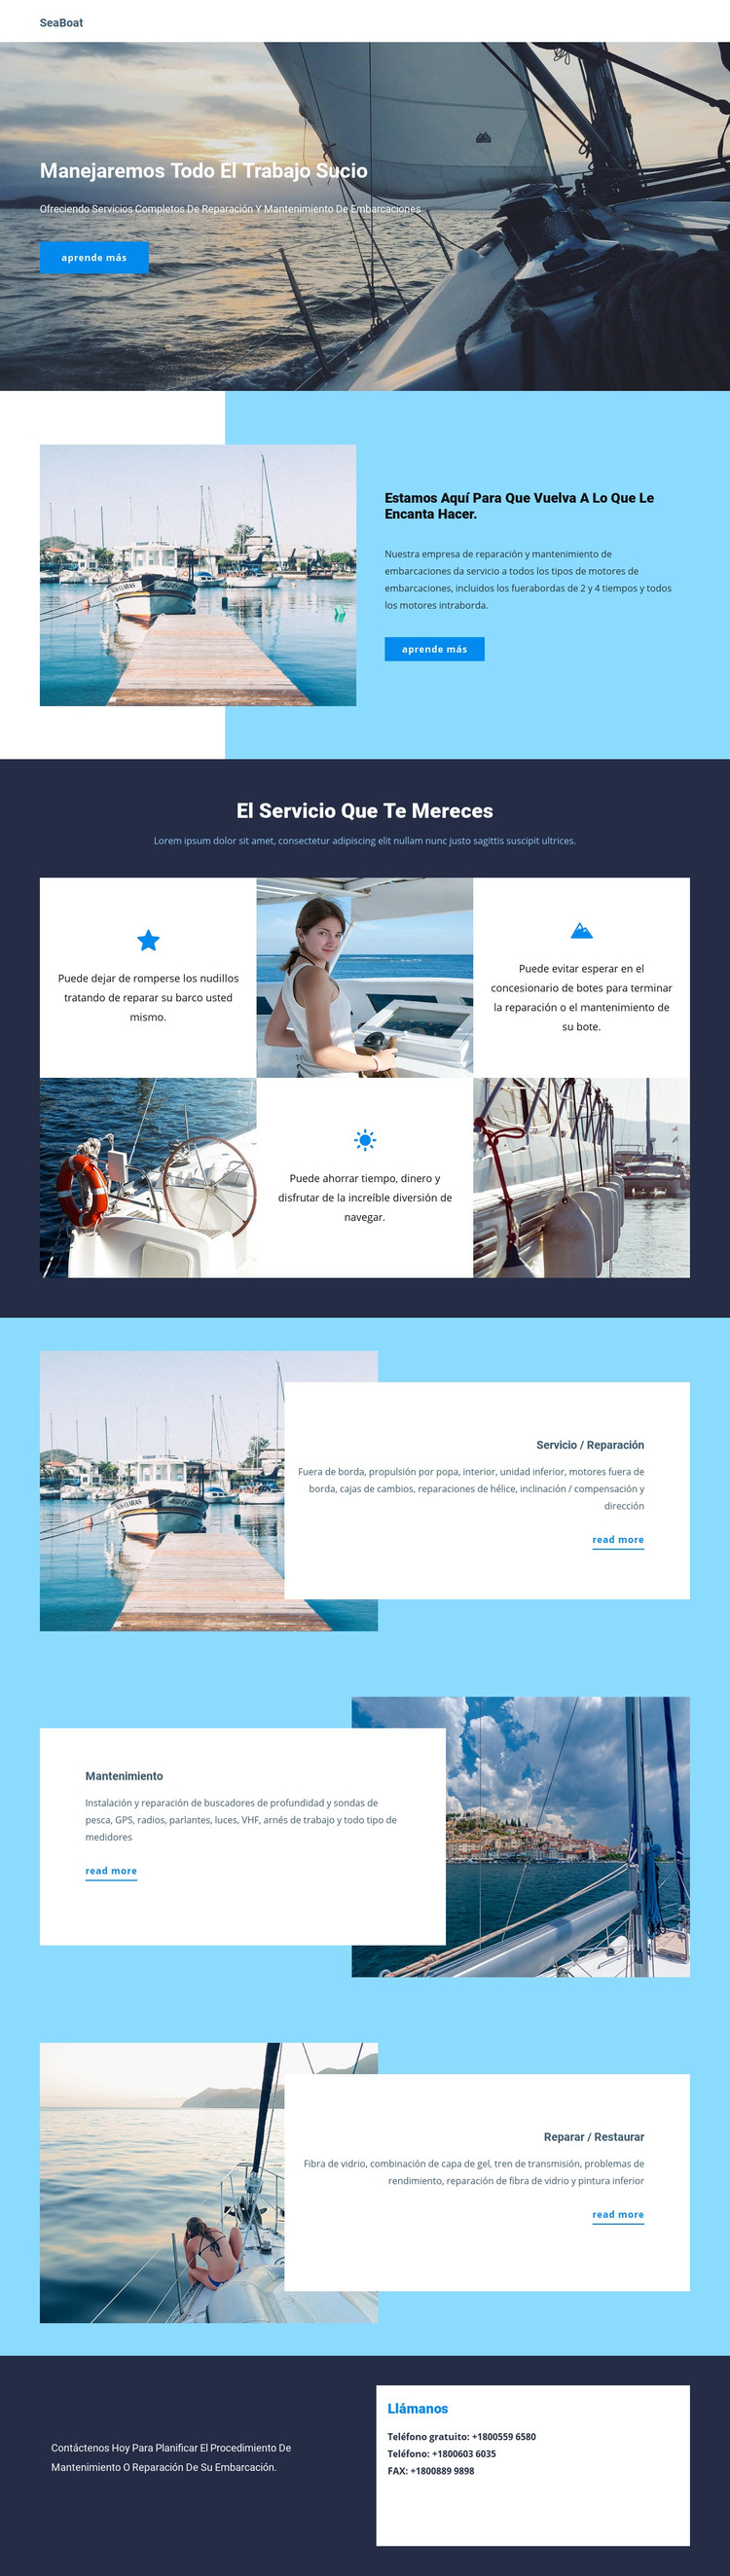 Viajar en Seaboat Plantilla HTML